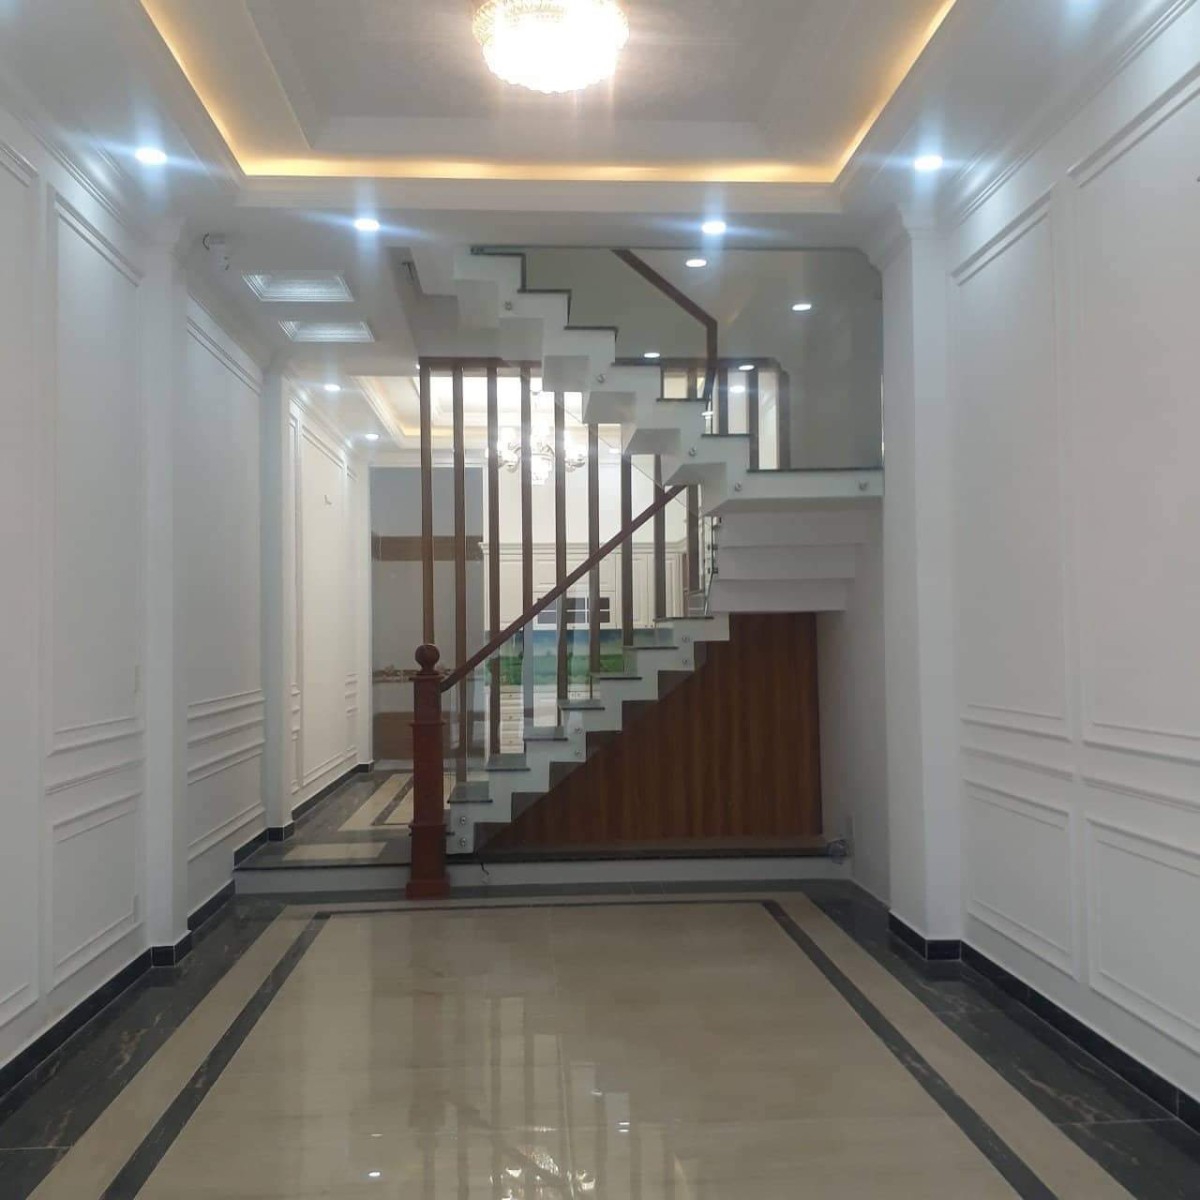 Cho thuê nhà ở, văn phòng công ty, mặt bằng kinh doanh tại quận Bình Tân 4mX17m